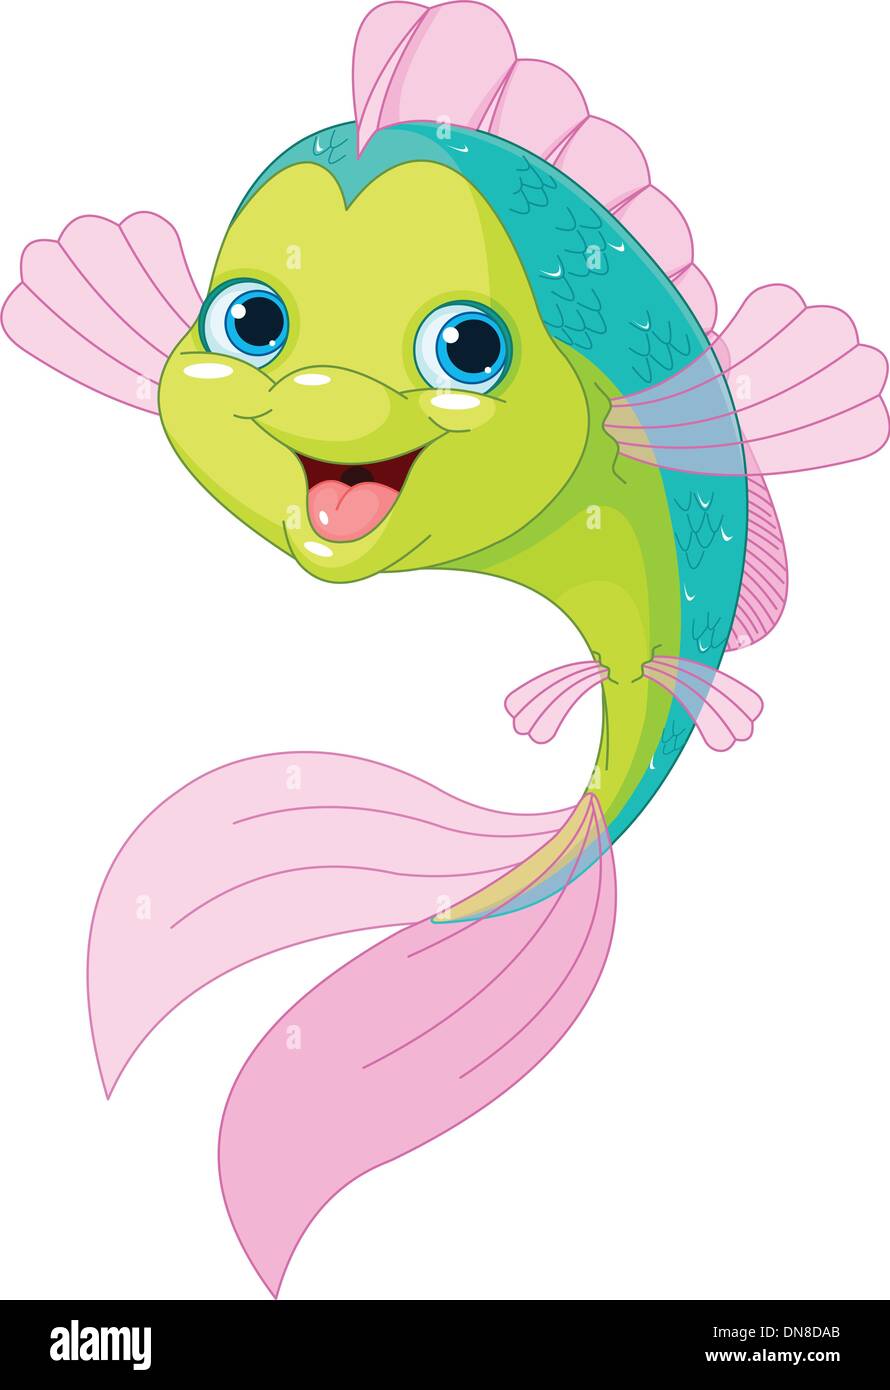 Cute cartoon fish Stock Vector Image & Art - Alamy